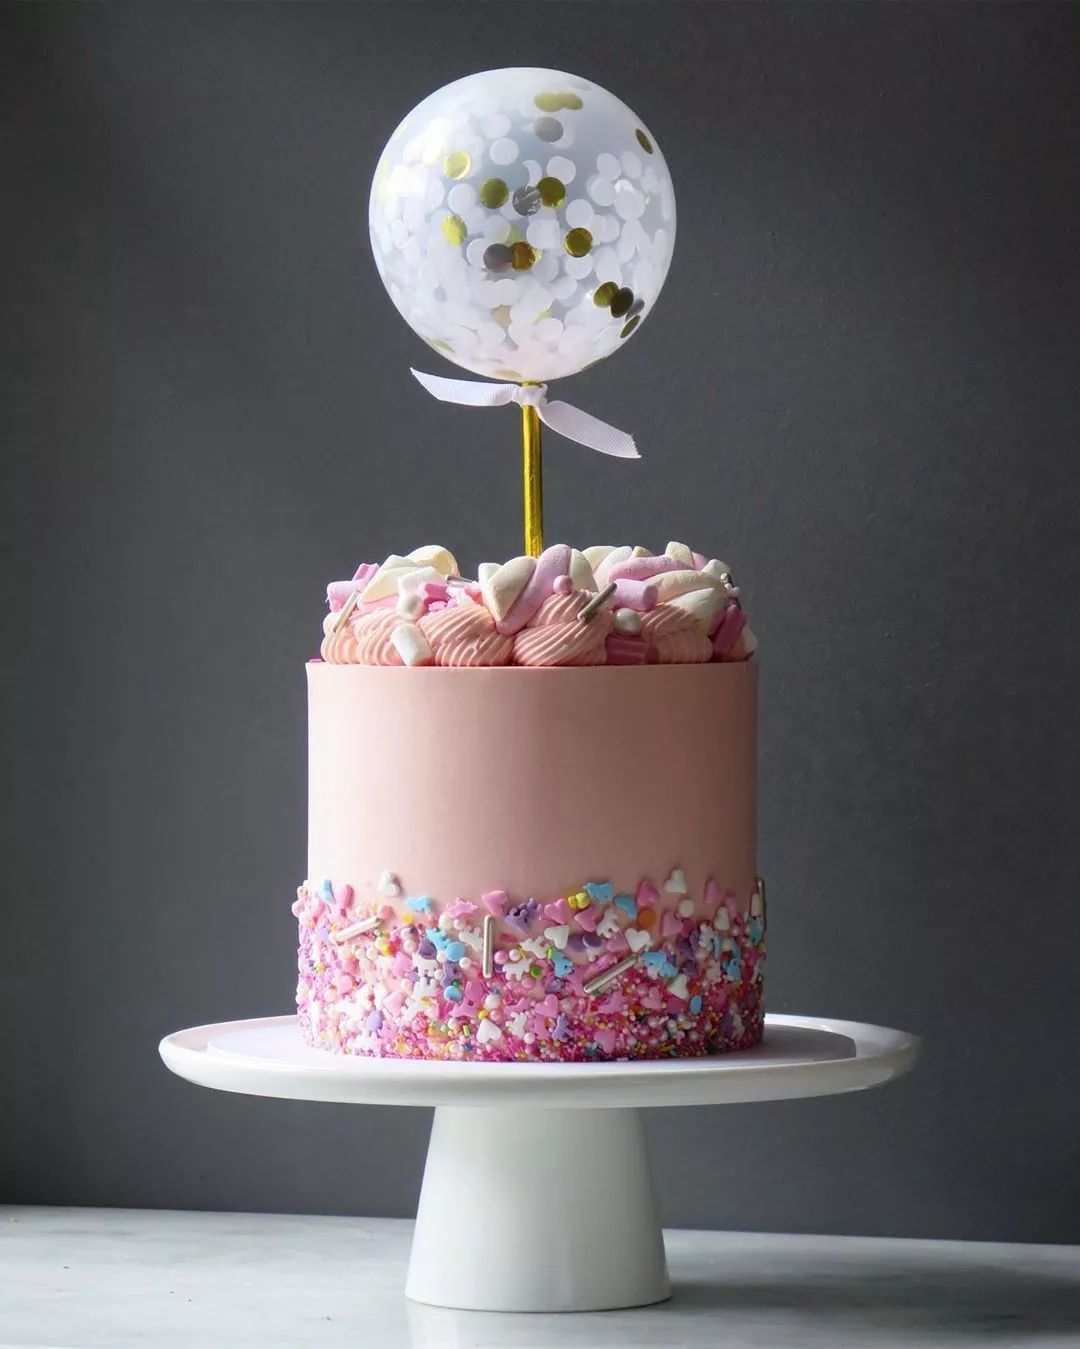 国外的私房蛋糕都用彩糖装饰蛋糕美爆了，6寸的一个卖500元都卖疯了！